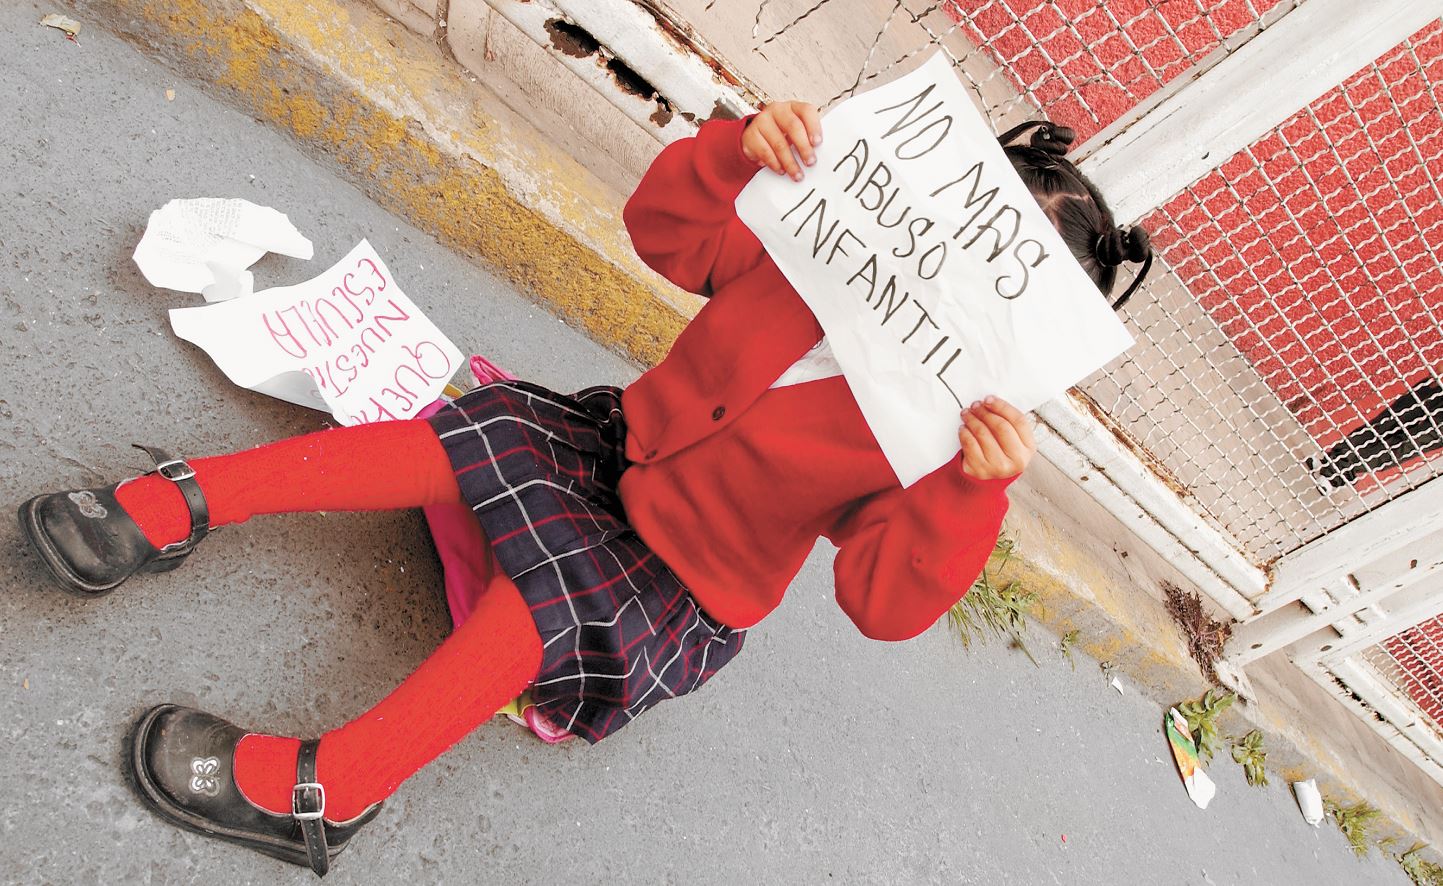  Cae profesor en Hidalgo por abuso a niña de 9 años